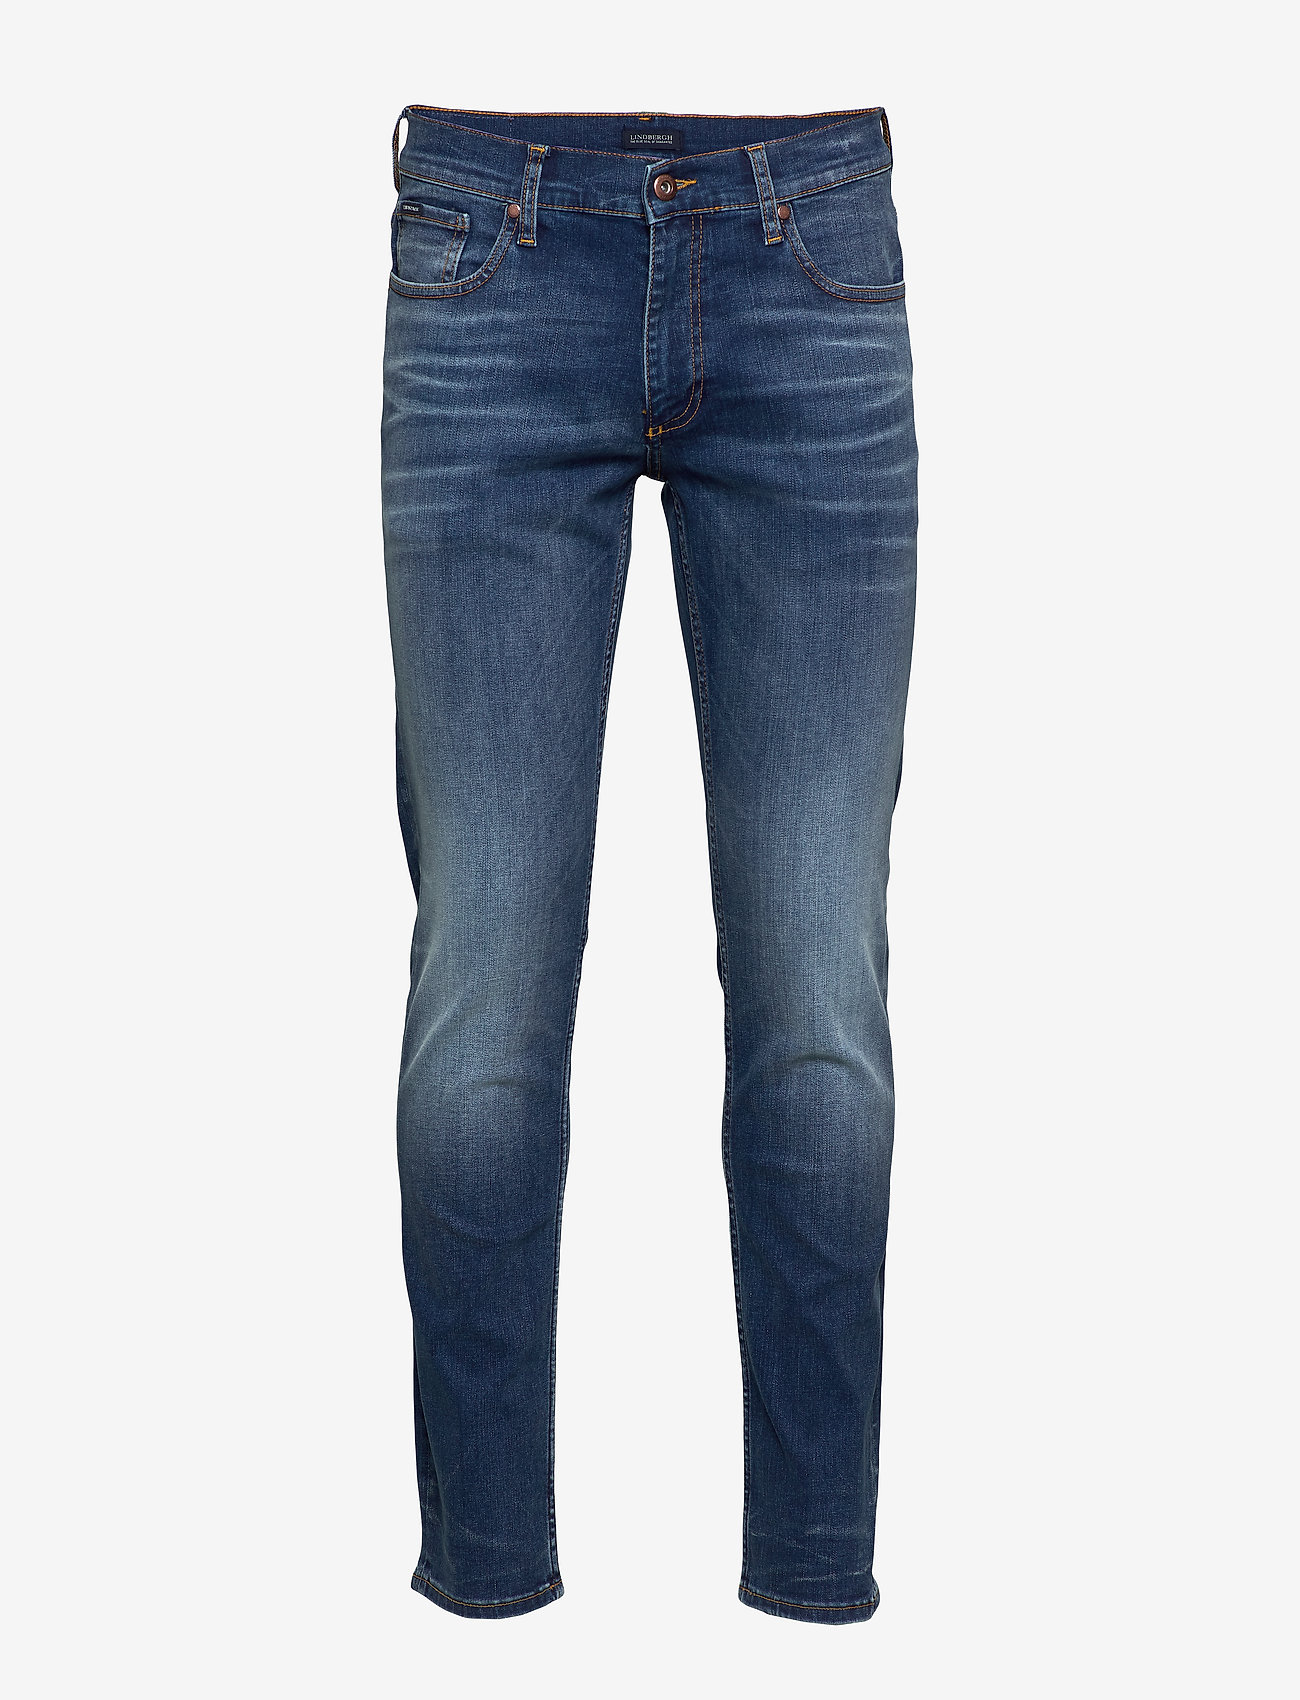 Lindbergh - Superflex jeans original blue - Tap - nordisk stil - original blue - 1